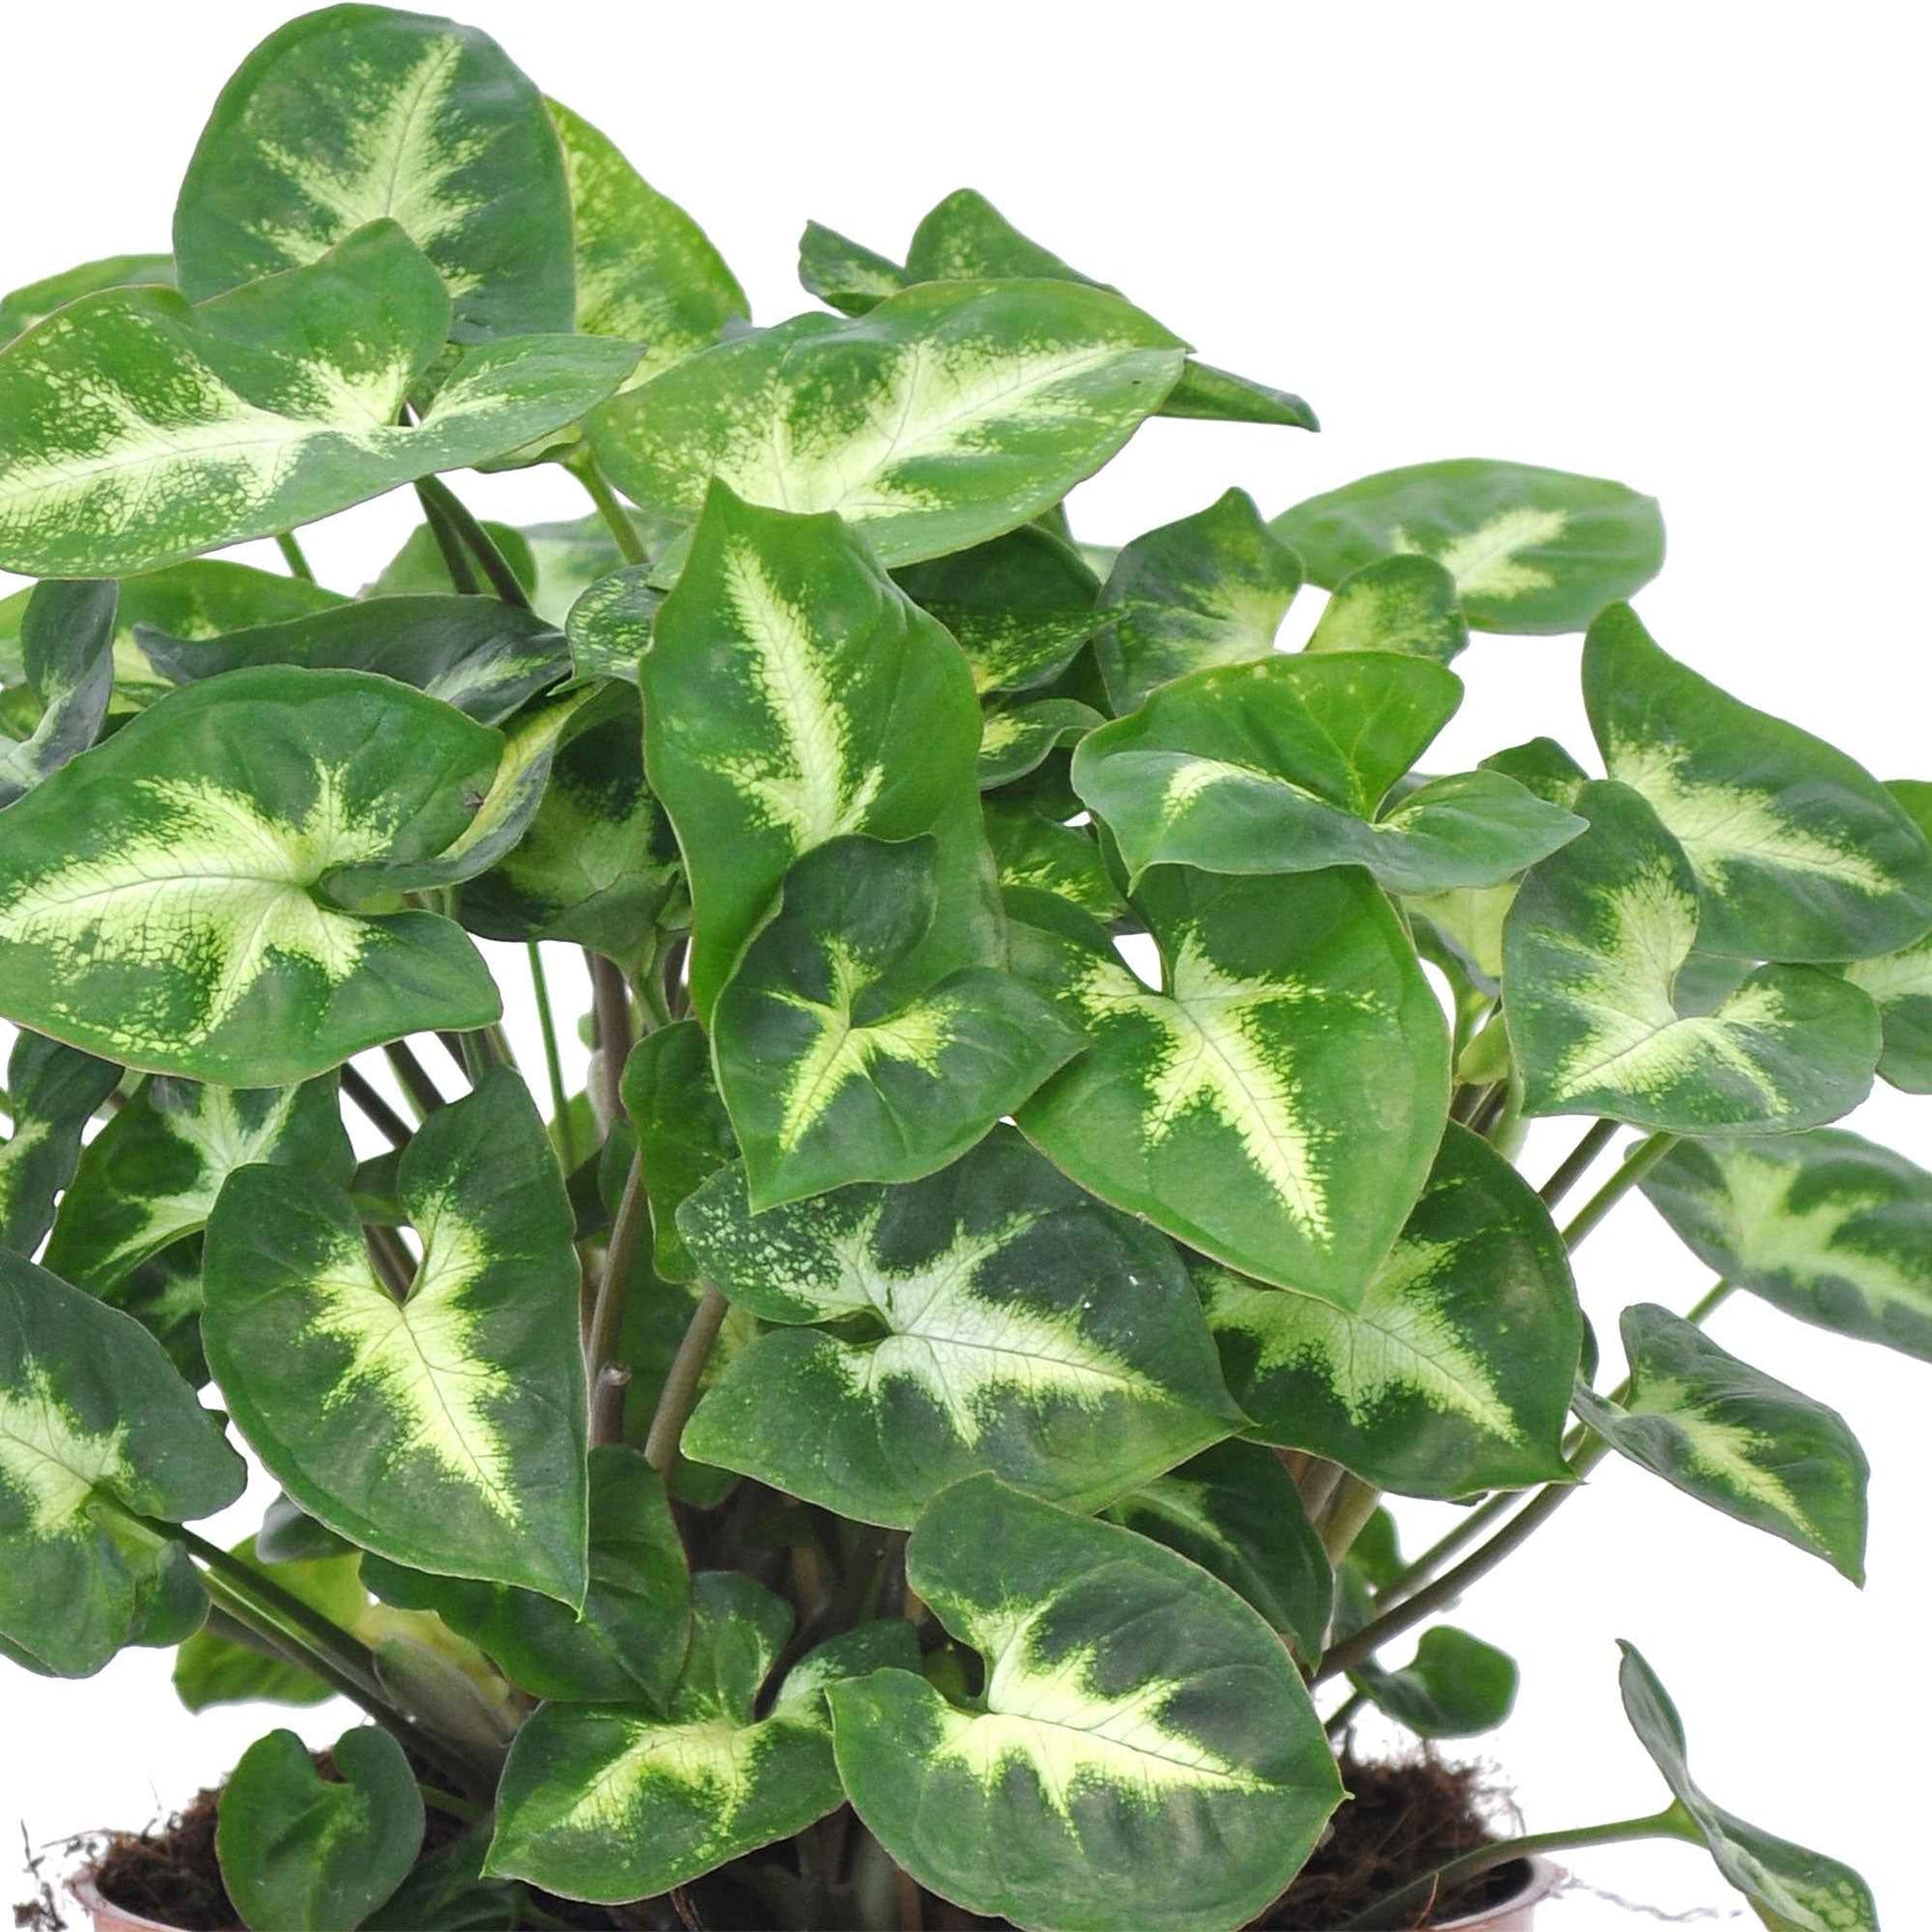 Plante d'intérieur - syngonium vert en hydroculture 30cm